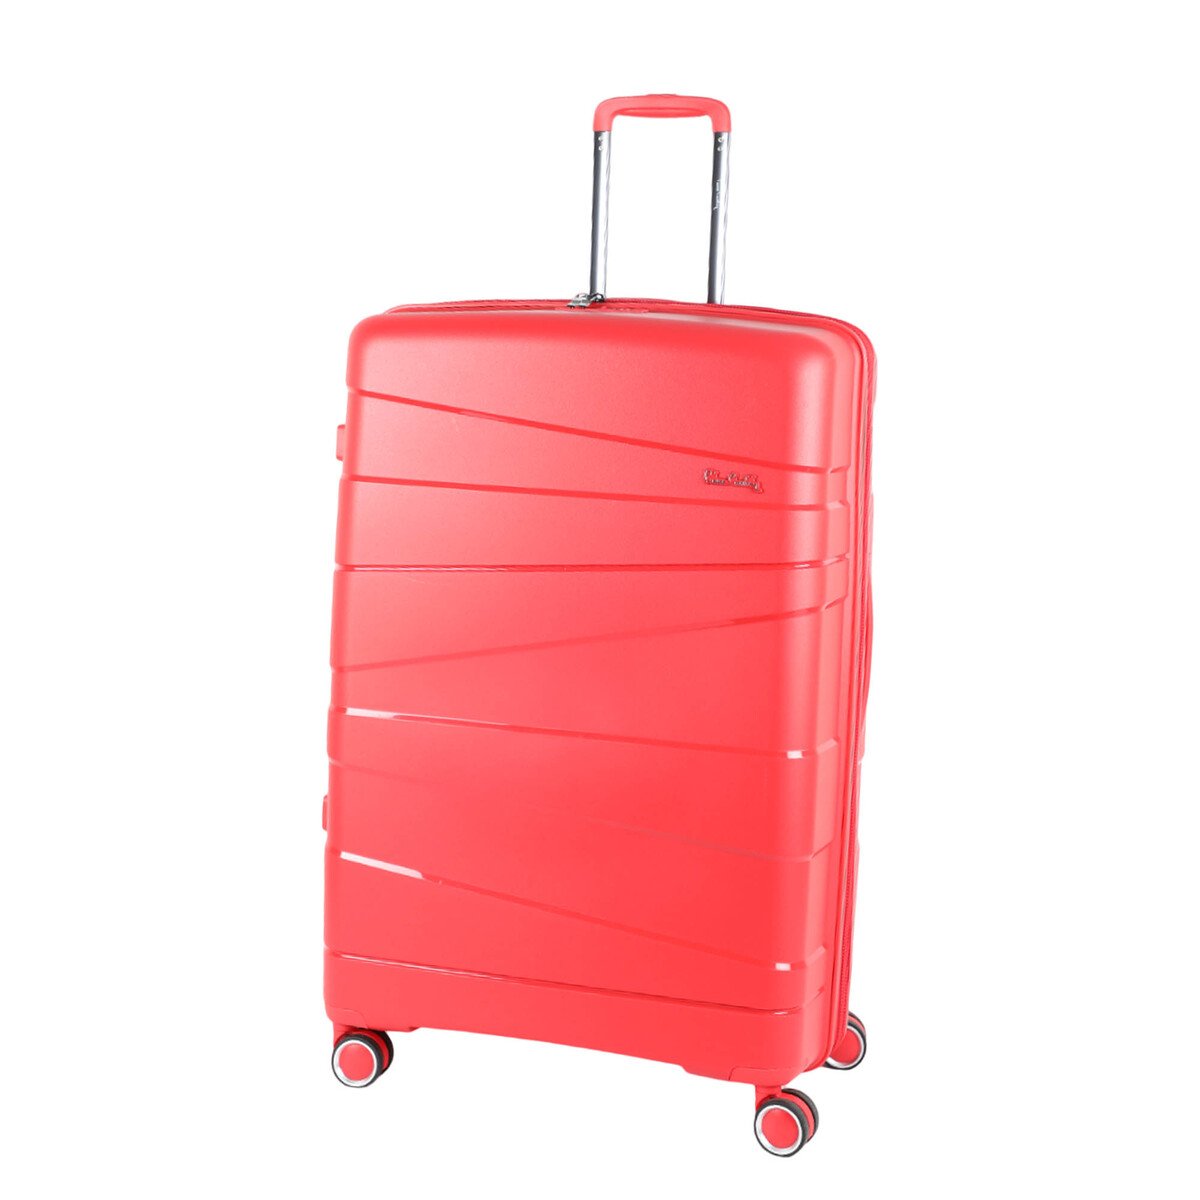 بيير كاردين زيورخ حقيبة سفر صلبة بـ4 عجلات 20 انش أحمر